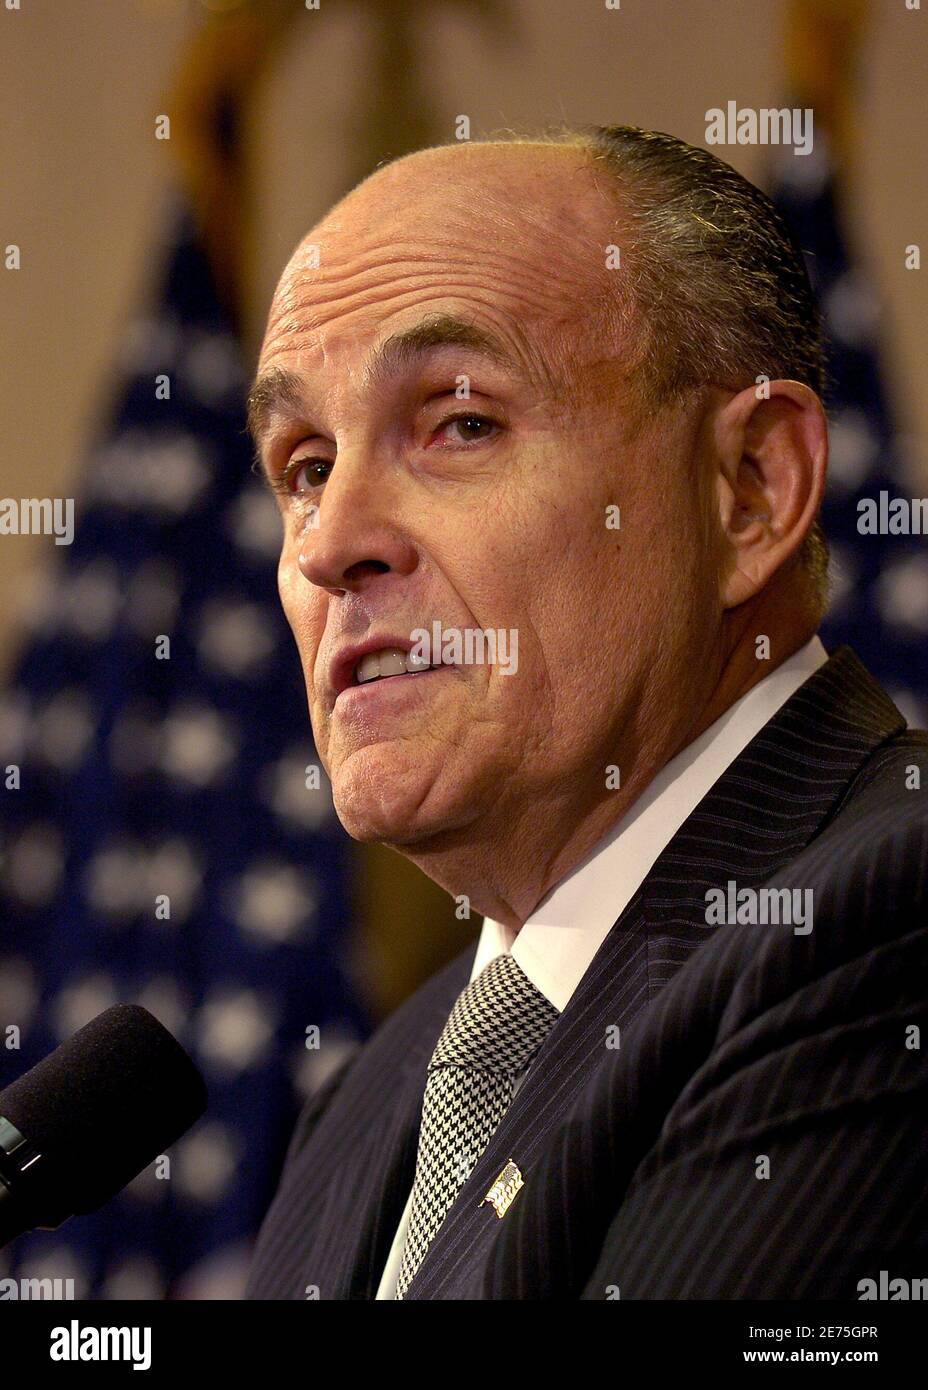 Le candidat républicain à la présidence et ancien maire de New York, Rudy Giuliani, fait des remarques lors d'une conférence de presse au cours de laquelle le leader évangélique chrétien Pat Robertson a approuvé la campagne de Giuliani à Washington, le 7 novembre 2007. REUTERS/Mike Theiler (ÉTATS-UNIS) Banque D'Images